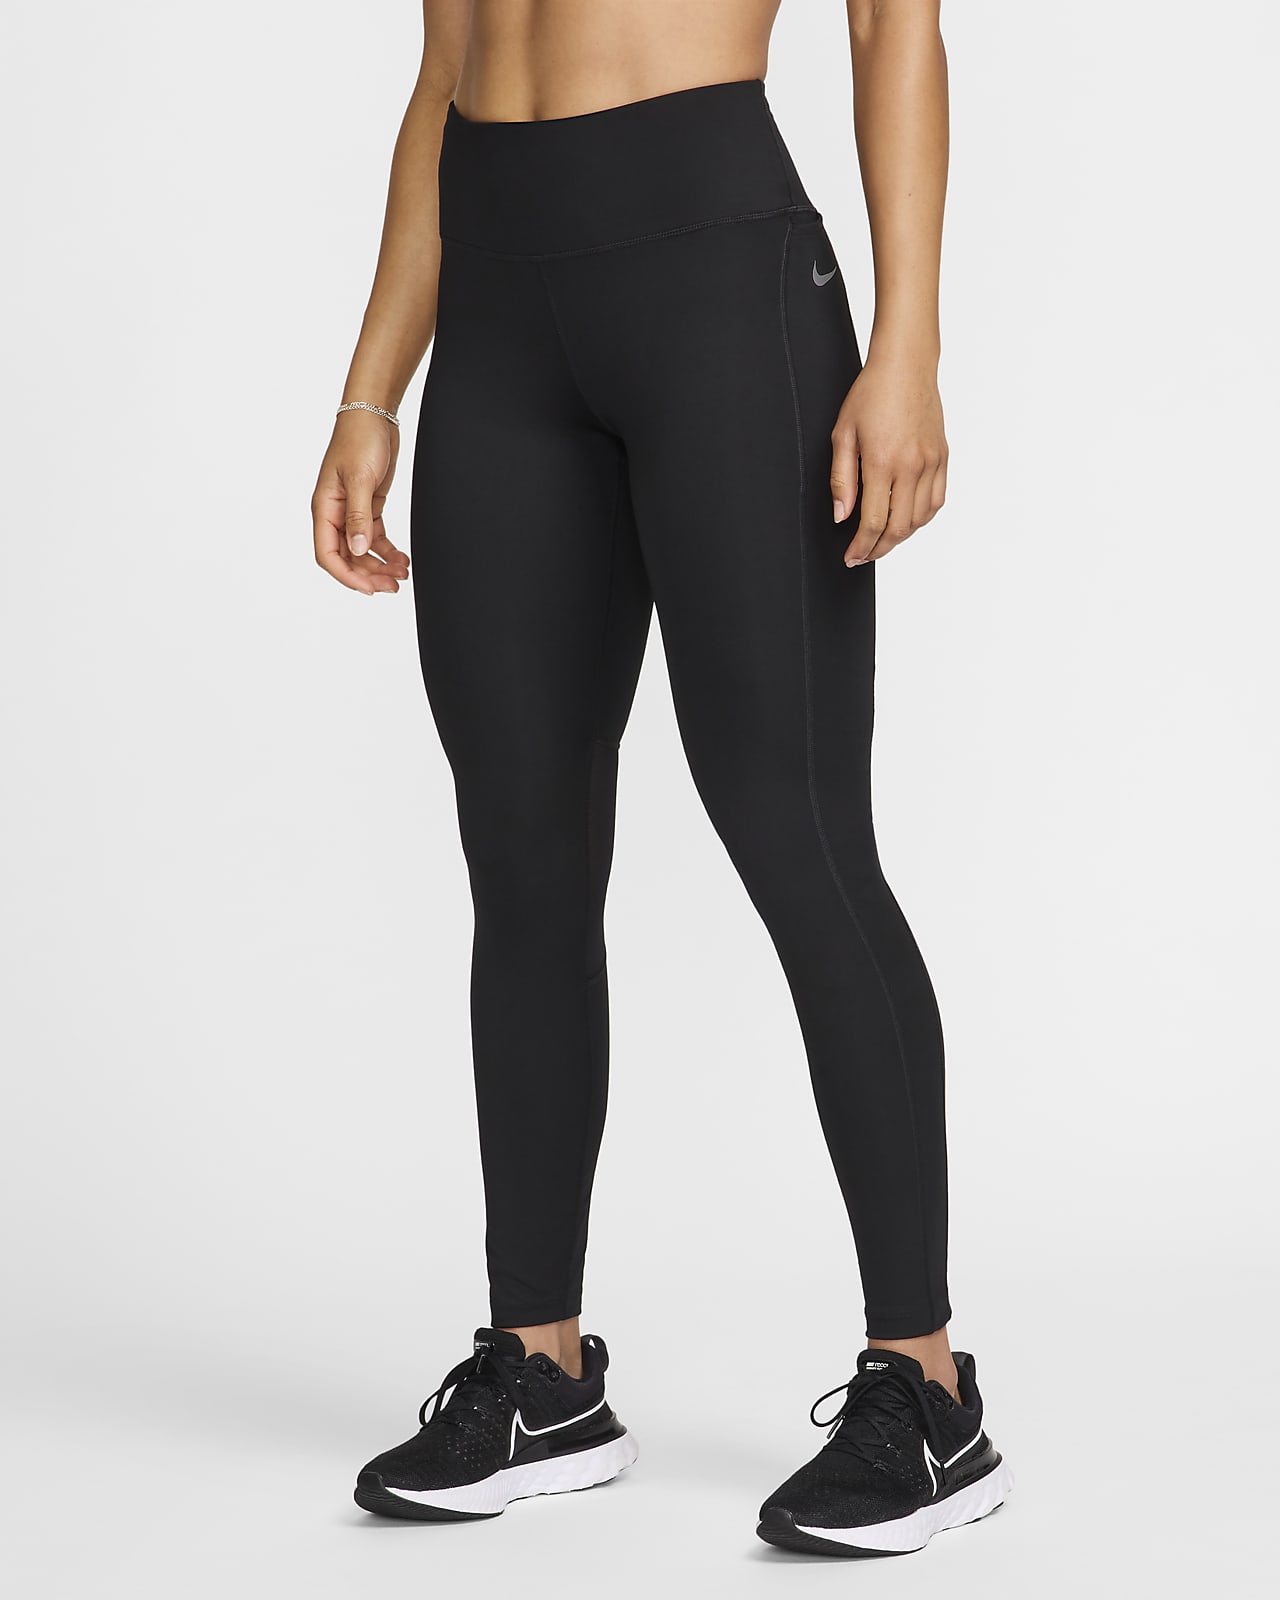 Buy Nike Women's Dri-FIT Run Division Fast Leggings Black in KSA -SSS